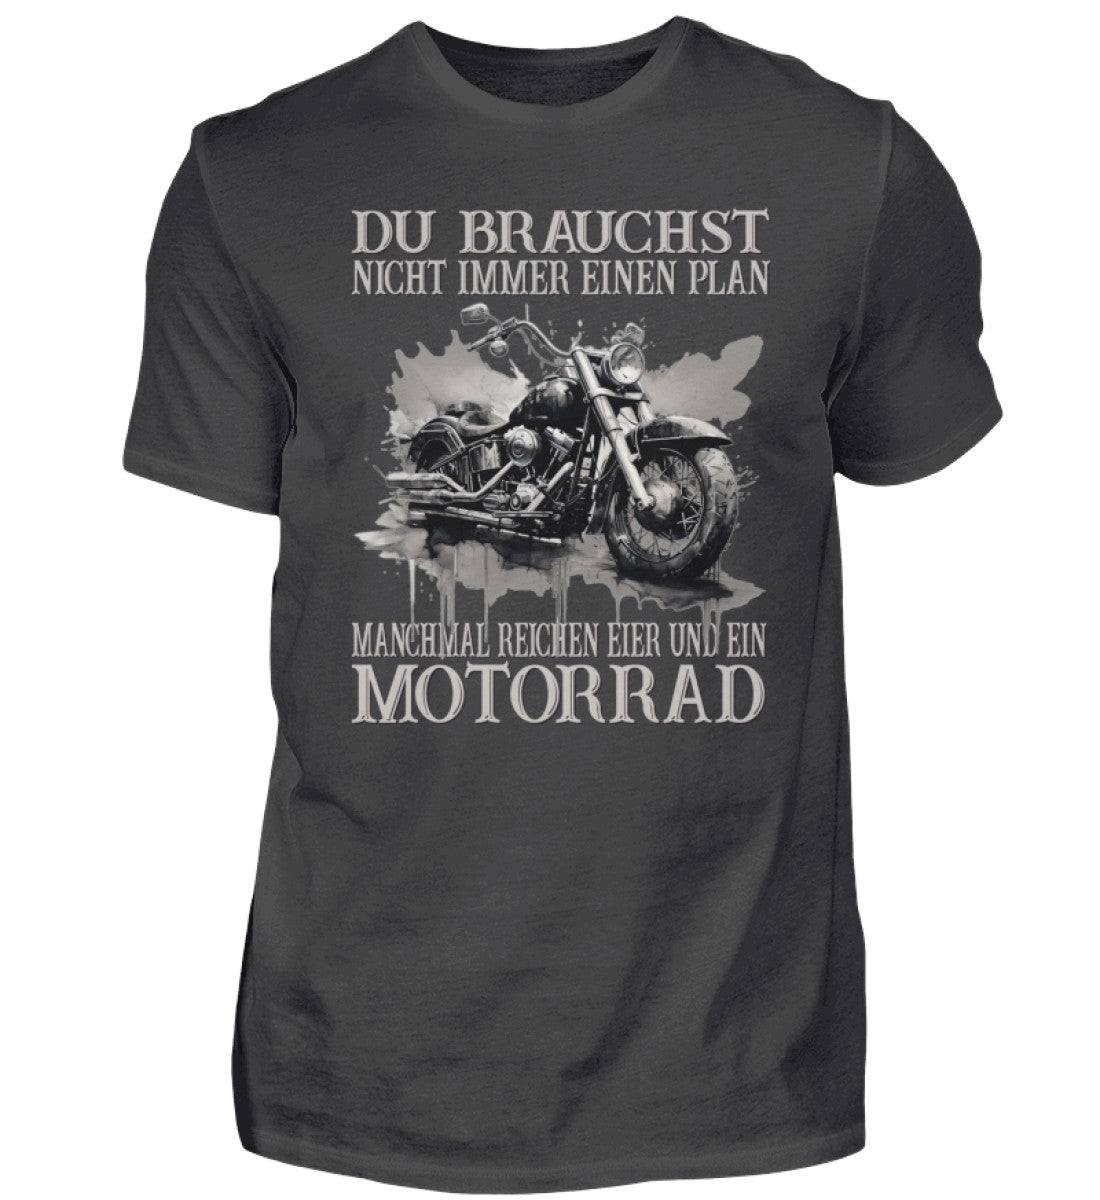 Ein Biker T-Shirt für Motorradfahrer von Wingbikers mit dem Aufdruck, Du brauchst nicht immer einen Plan - Manchmal reichen Eier und ein Motorrad - in dunkelgrau.